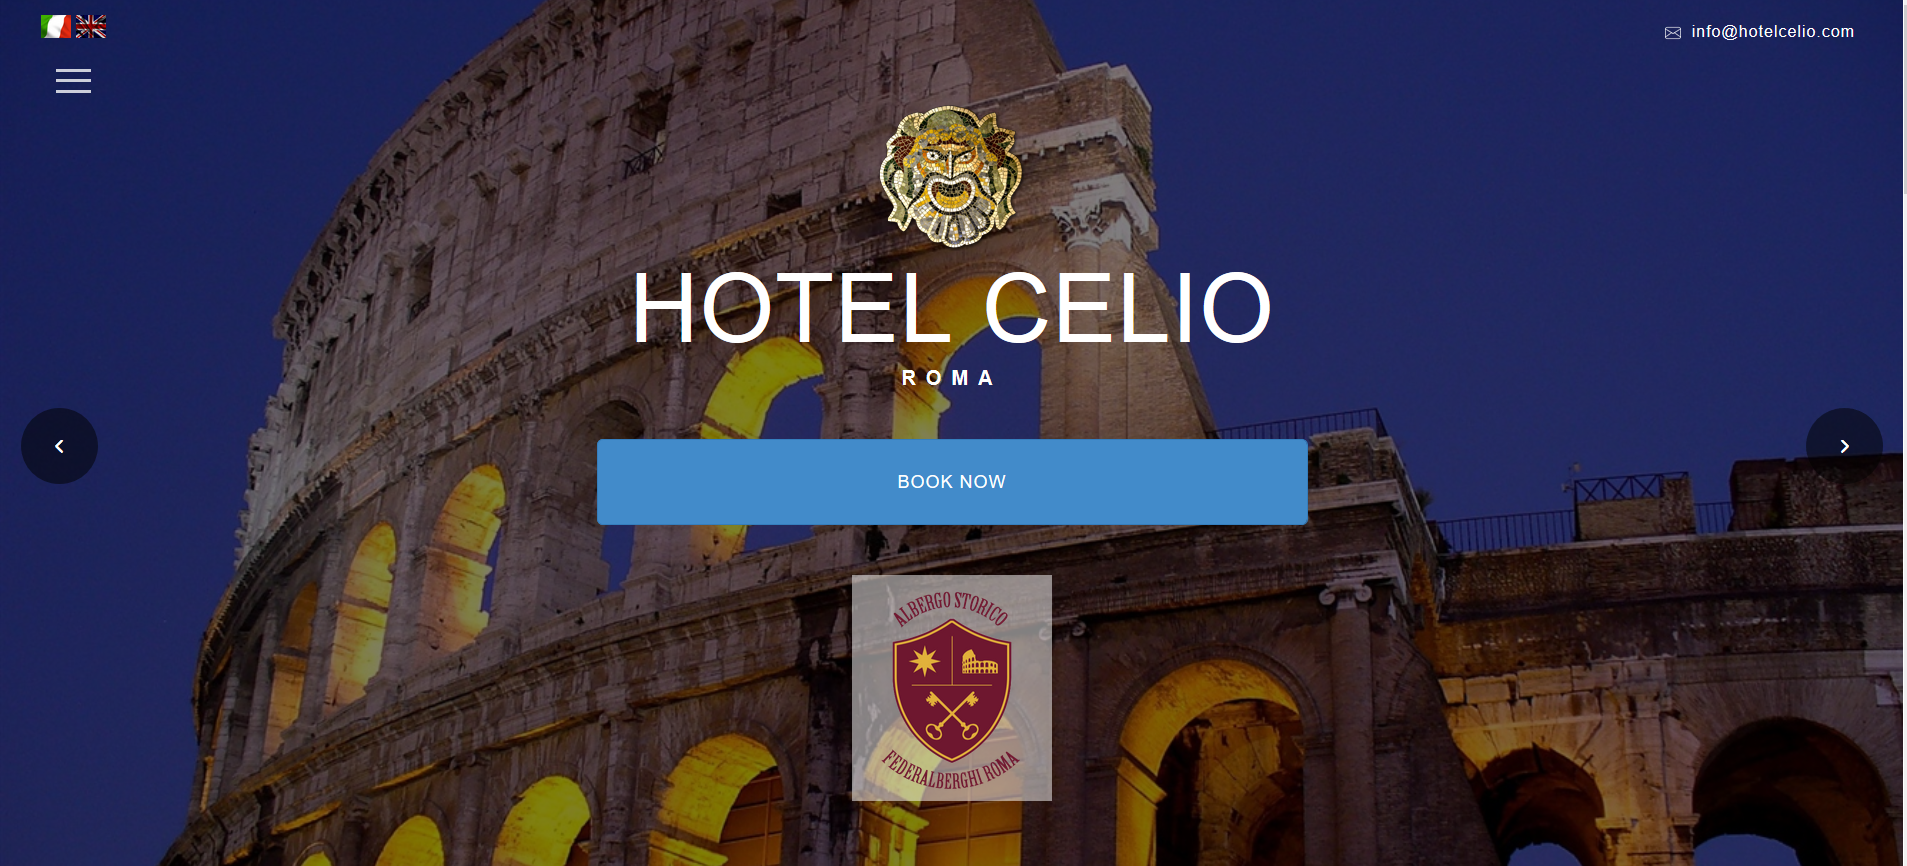 Hotel Celio - Roma